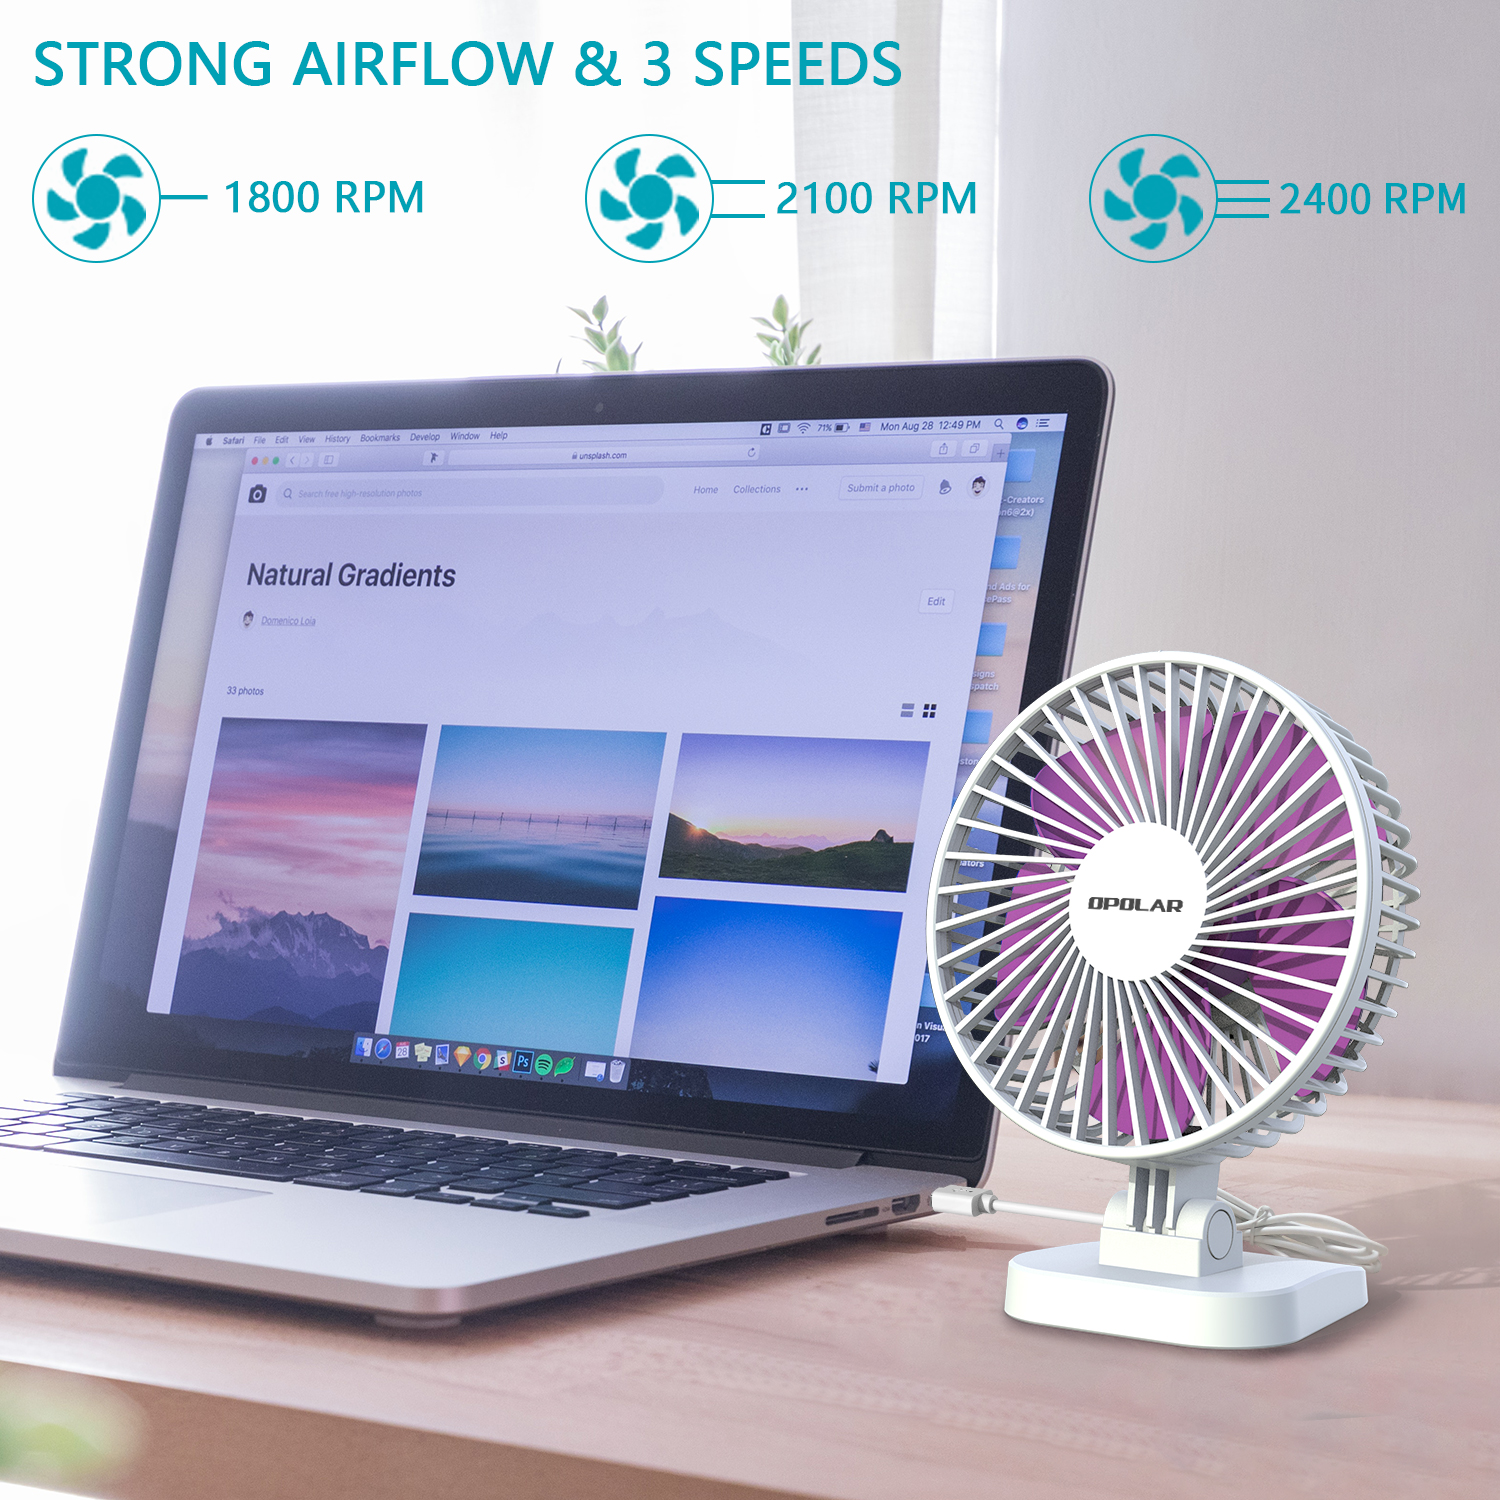 4.9 ft Cord USB Desk Fan Small Quiet Fan for Desktop Office Table 40° Adjustment 